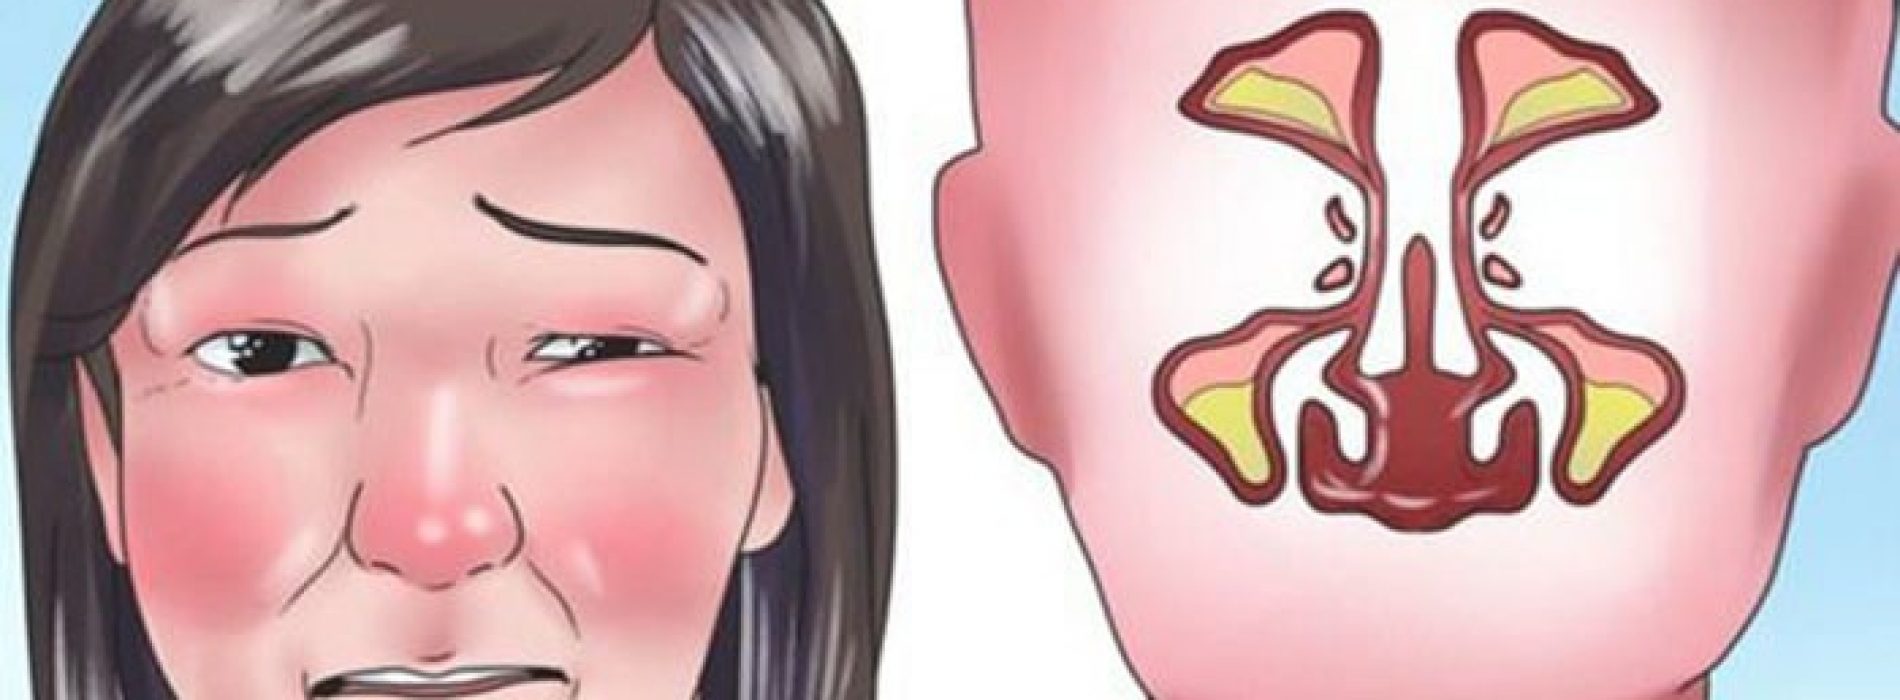 Gebruik deze geweldige truc om een verstopte neus binnen 2 minuten vrij te maken!